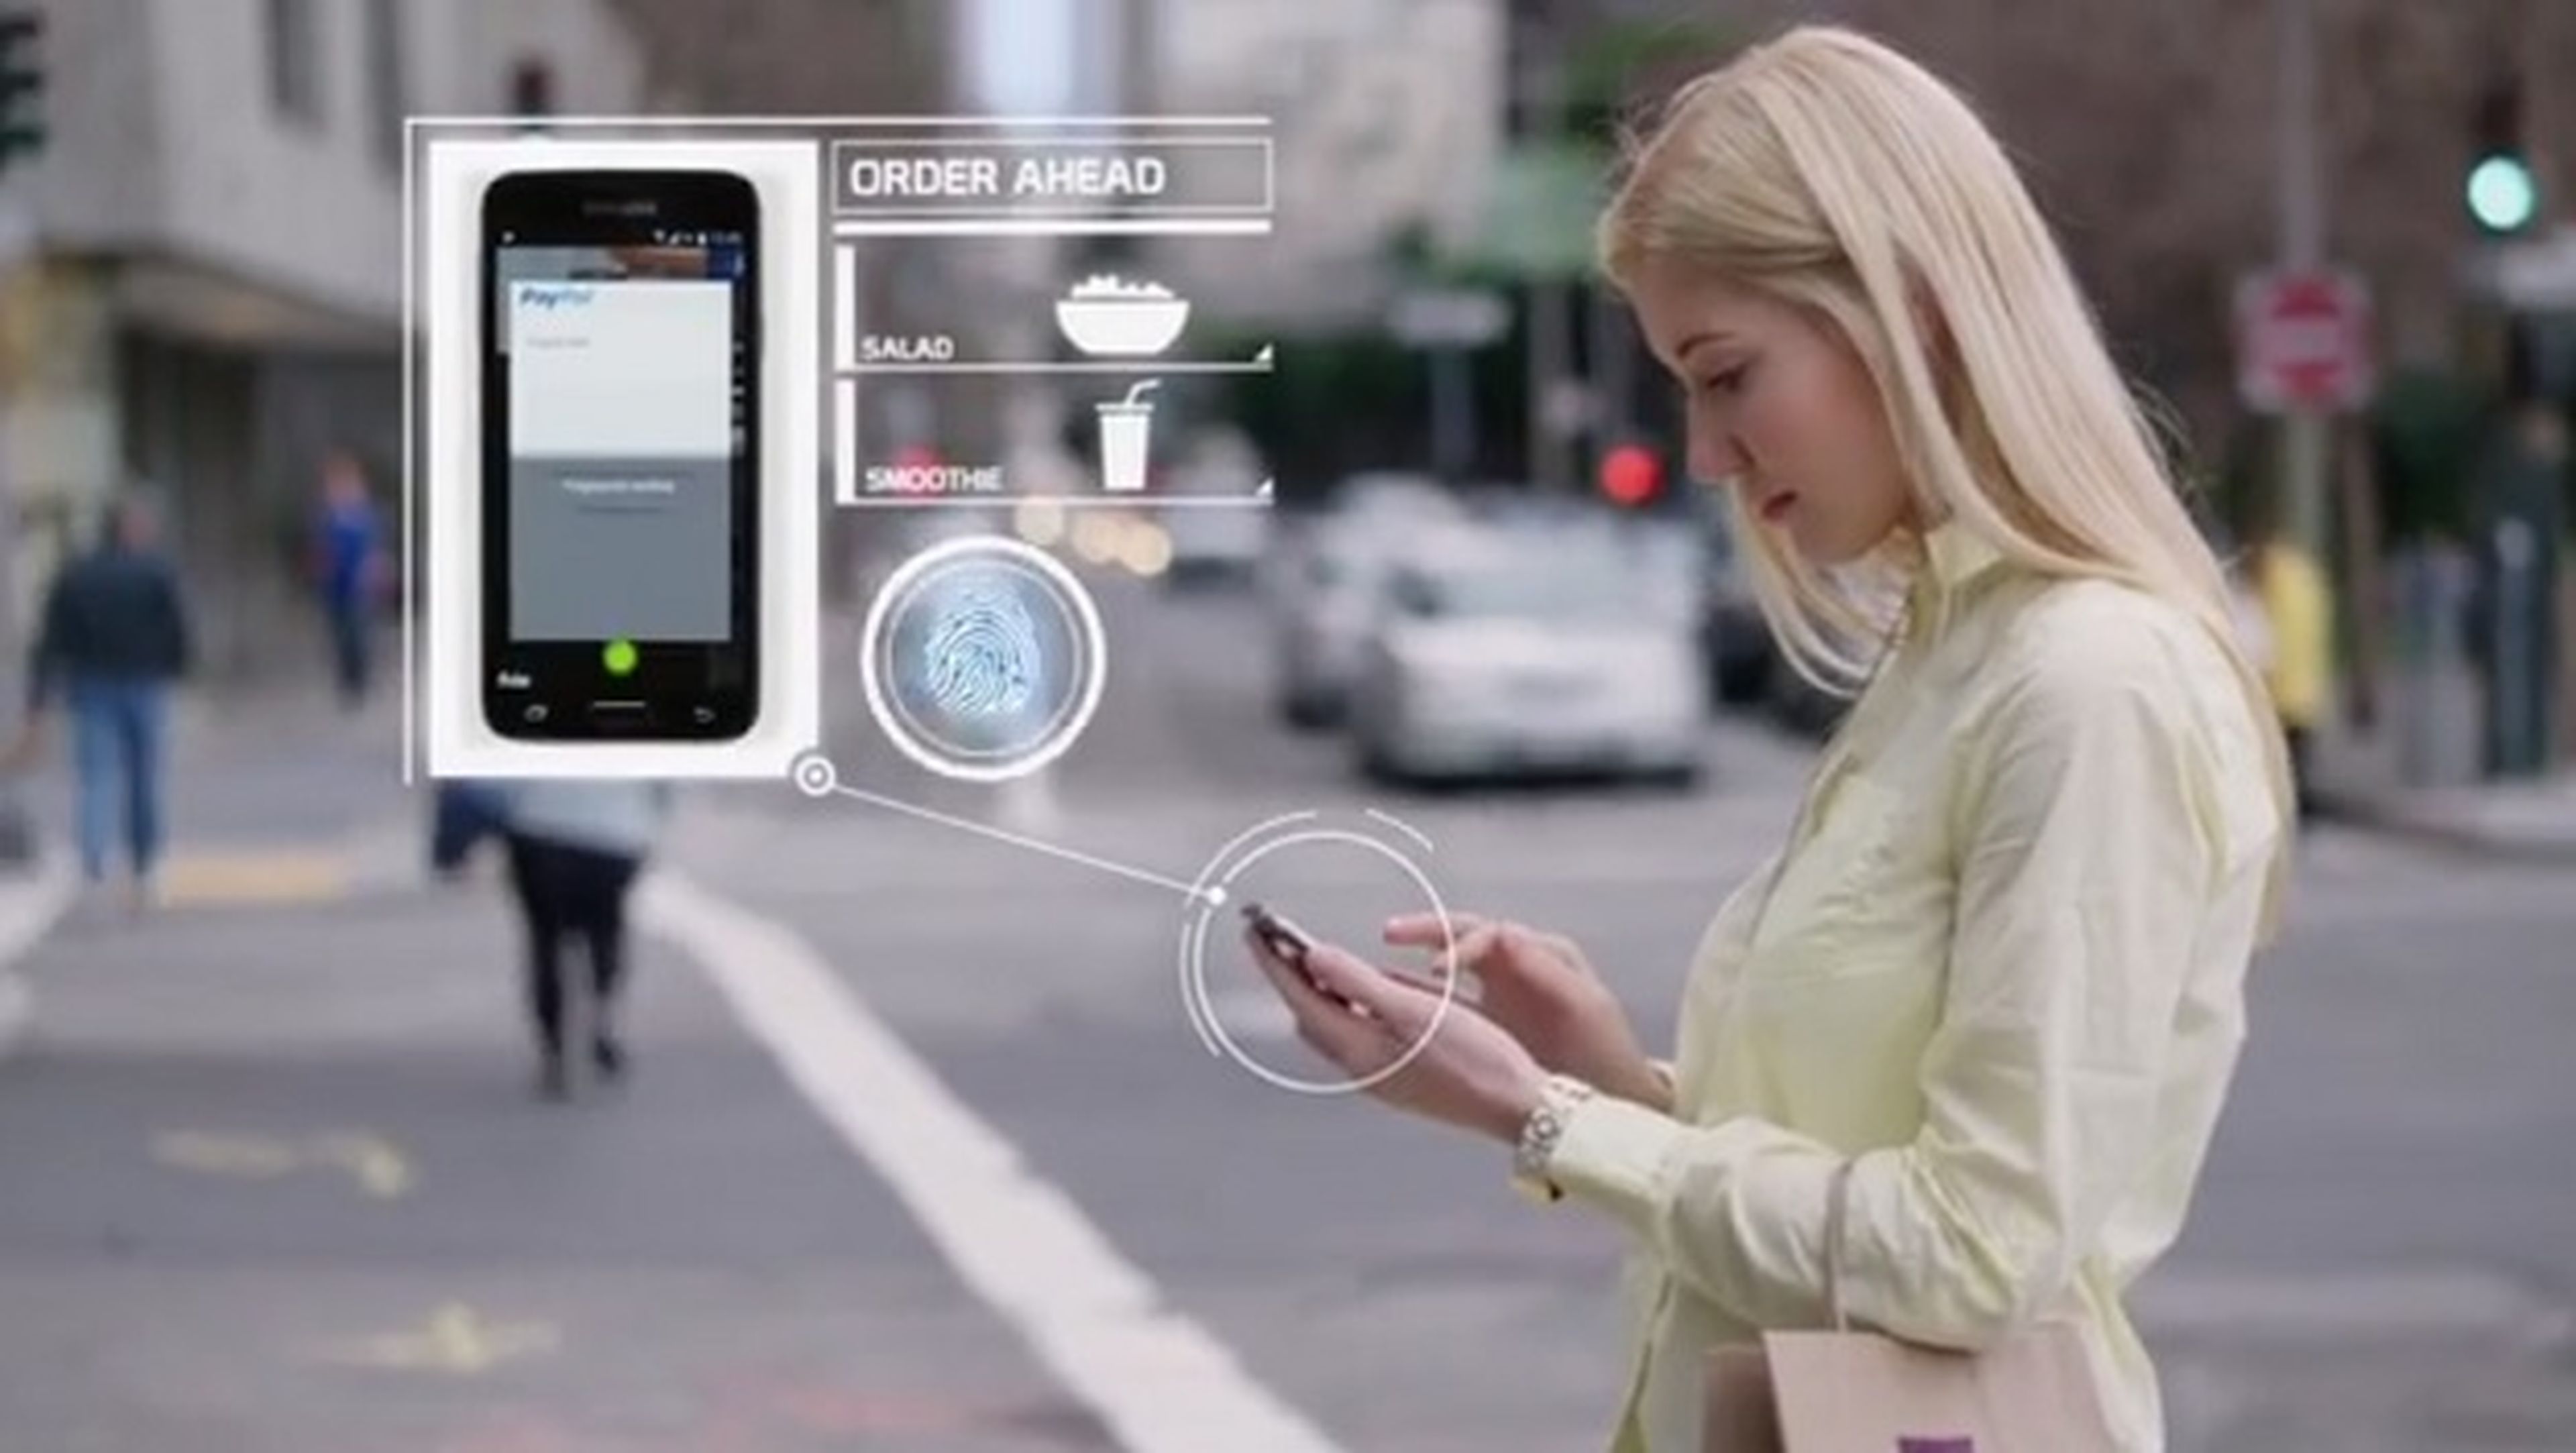 Samsung Galaxy S5 Paypal autenticación biométrica